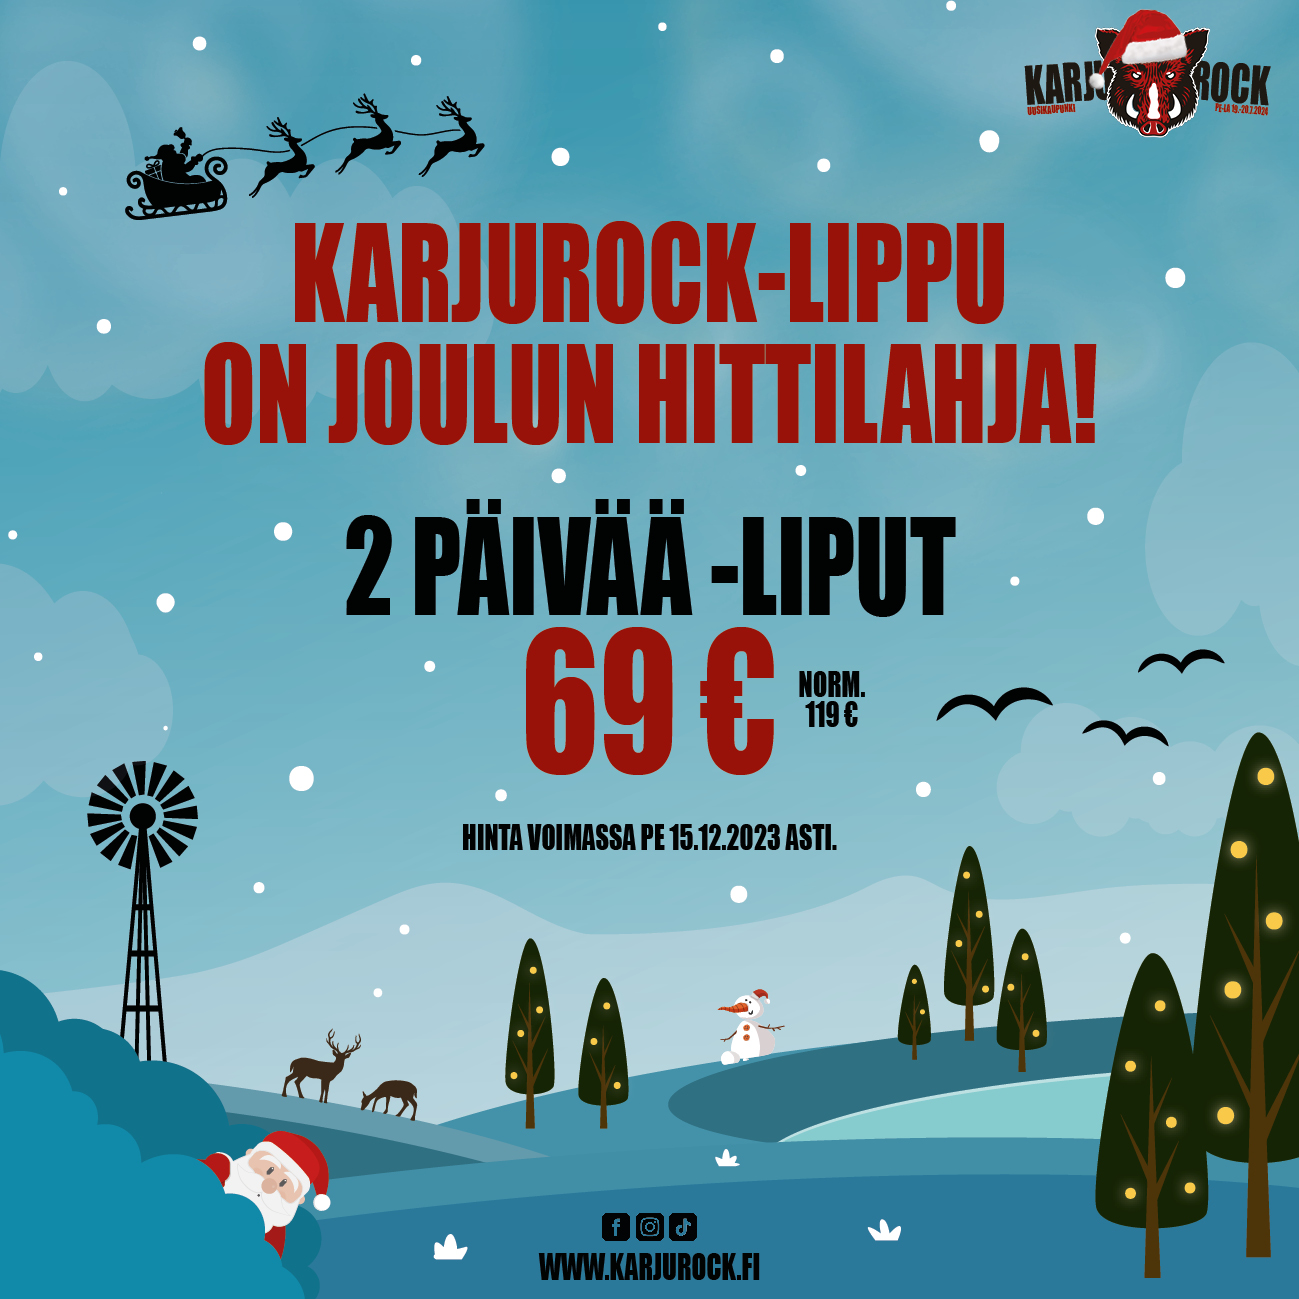 Pääsylippu kesän 2024 Karjurockiin on joulun odotetuin hittilahja!